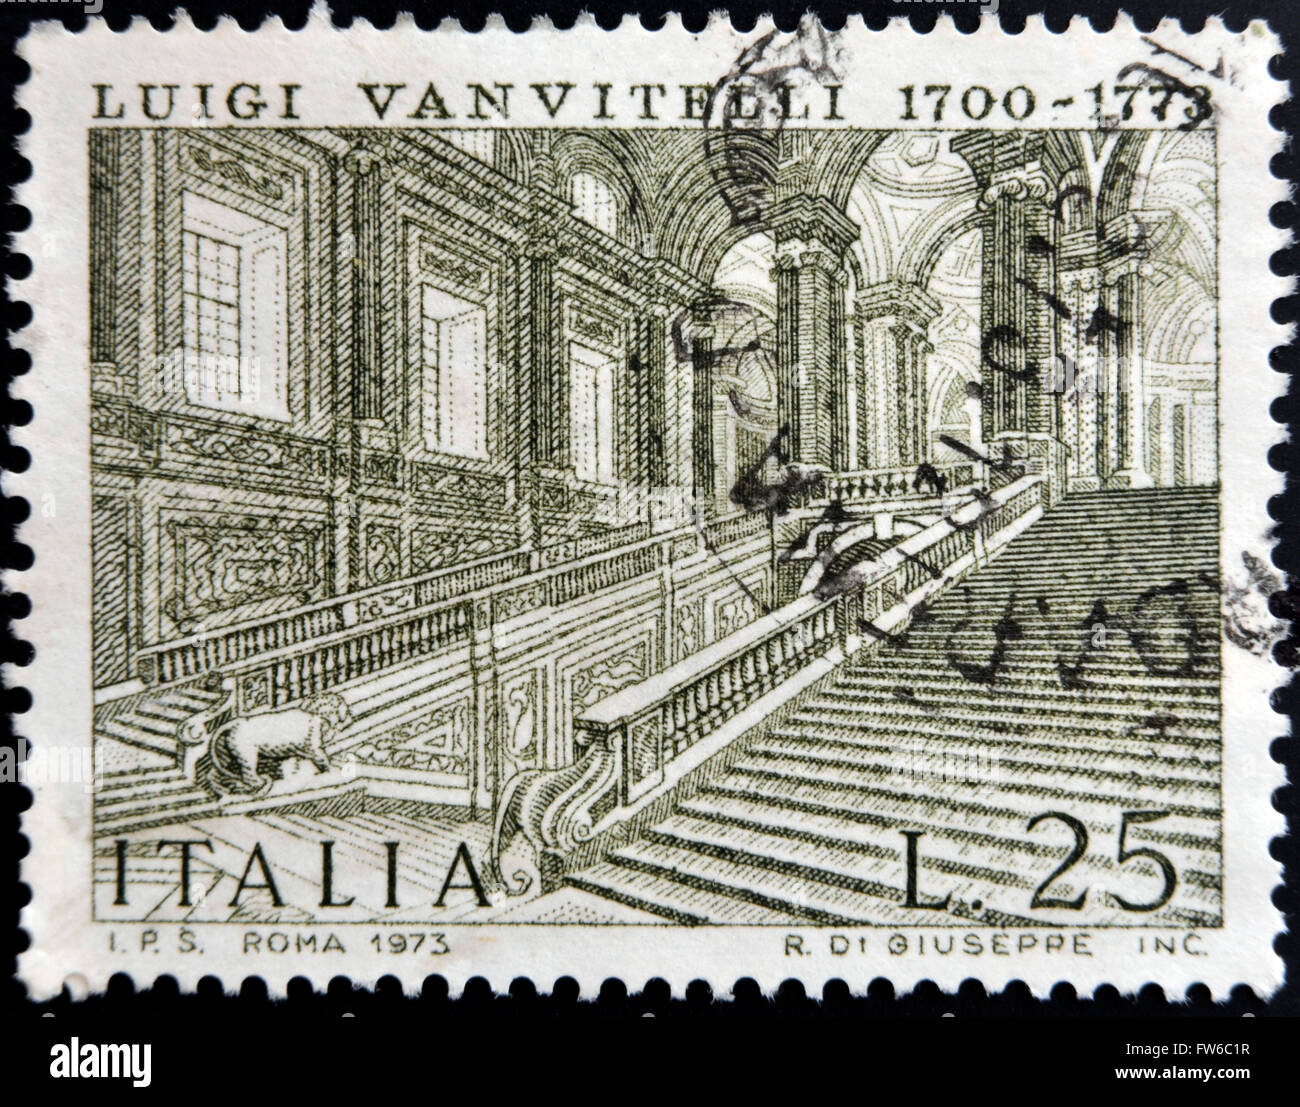 Italia - circa 1973: un timbro stampato in Italia mostra Palazzo Reale di Caserta di Luigi Vanvitelli, circa 1973 Foto Stock